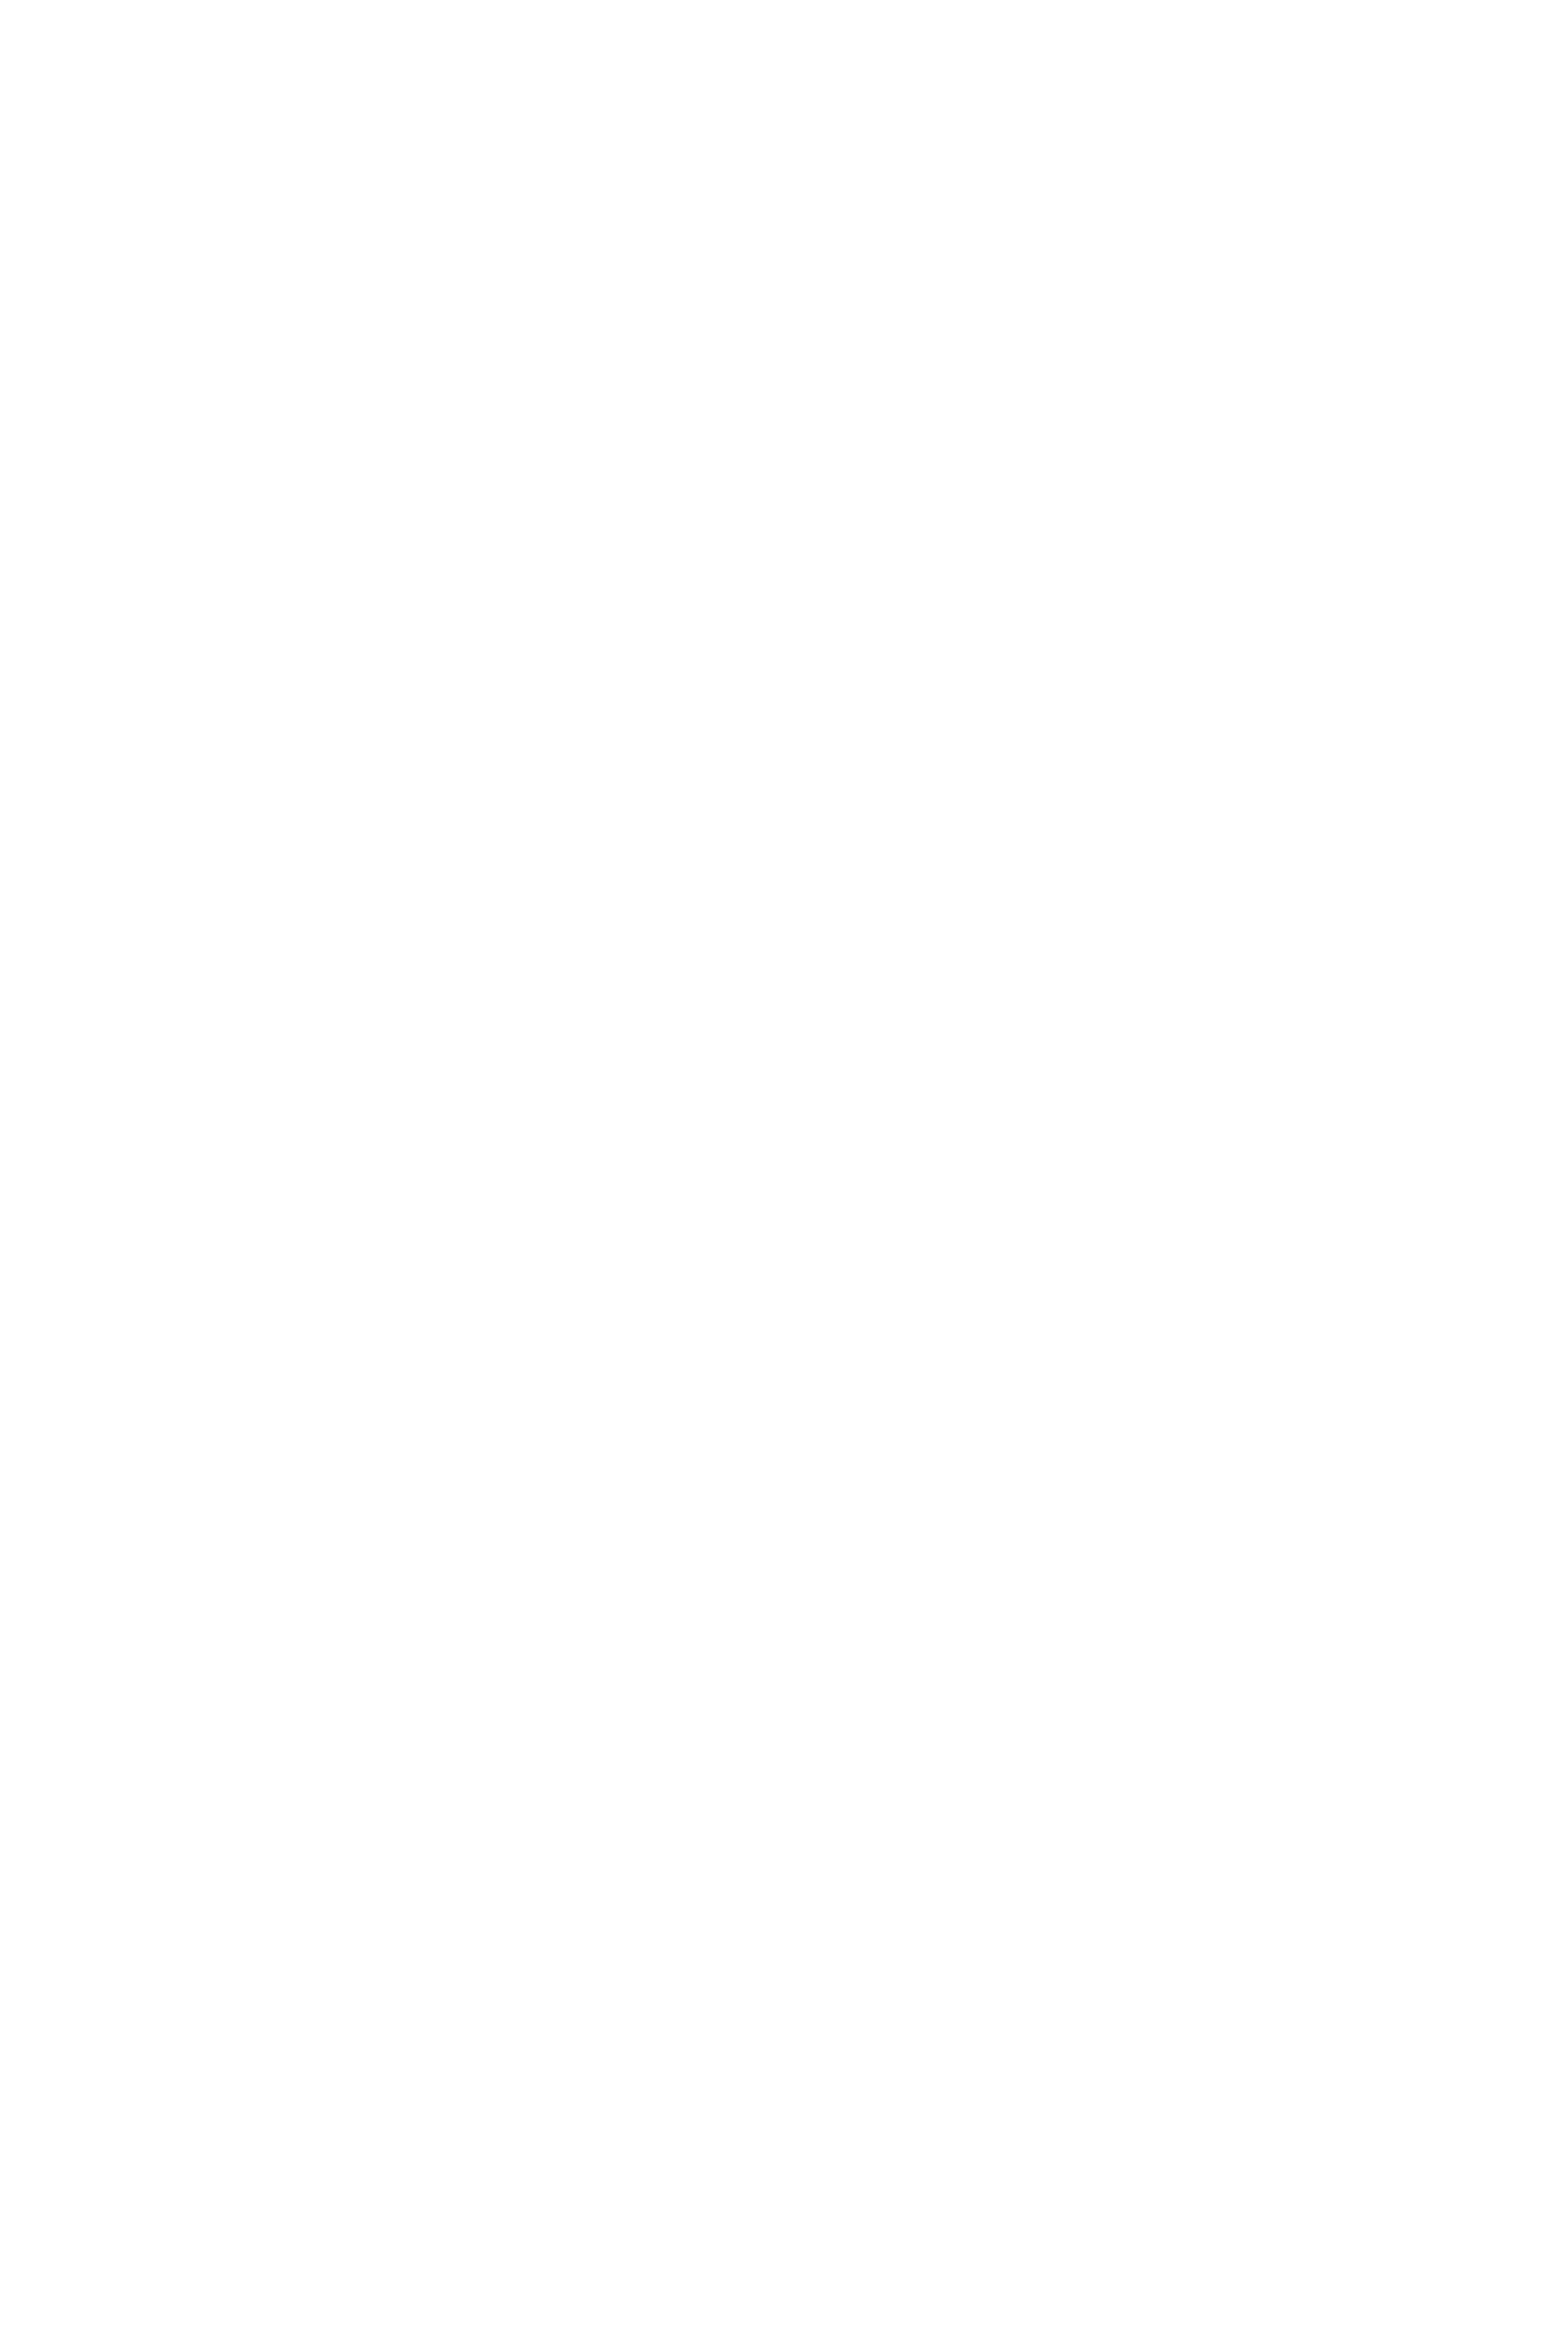 Lakmi Systems